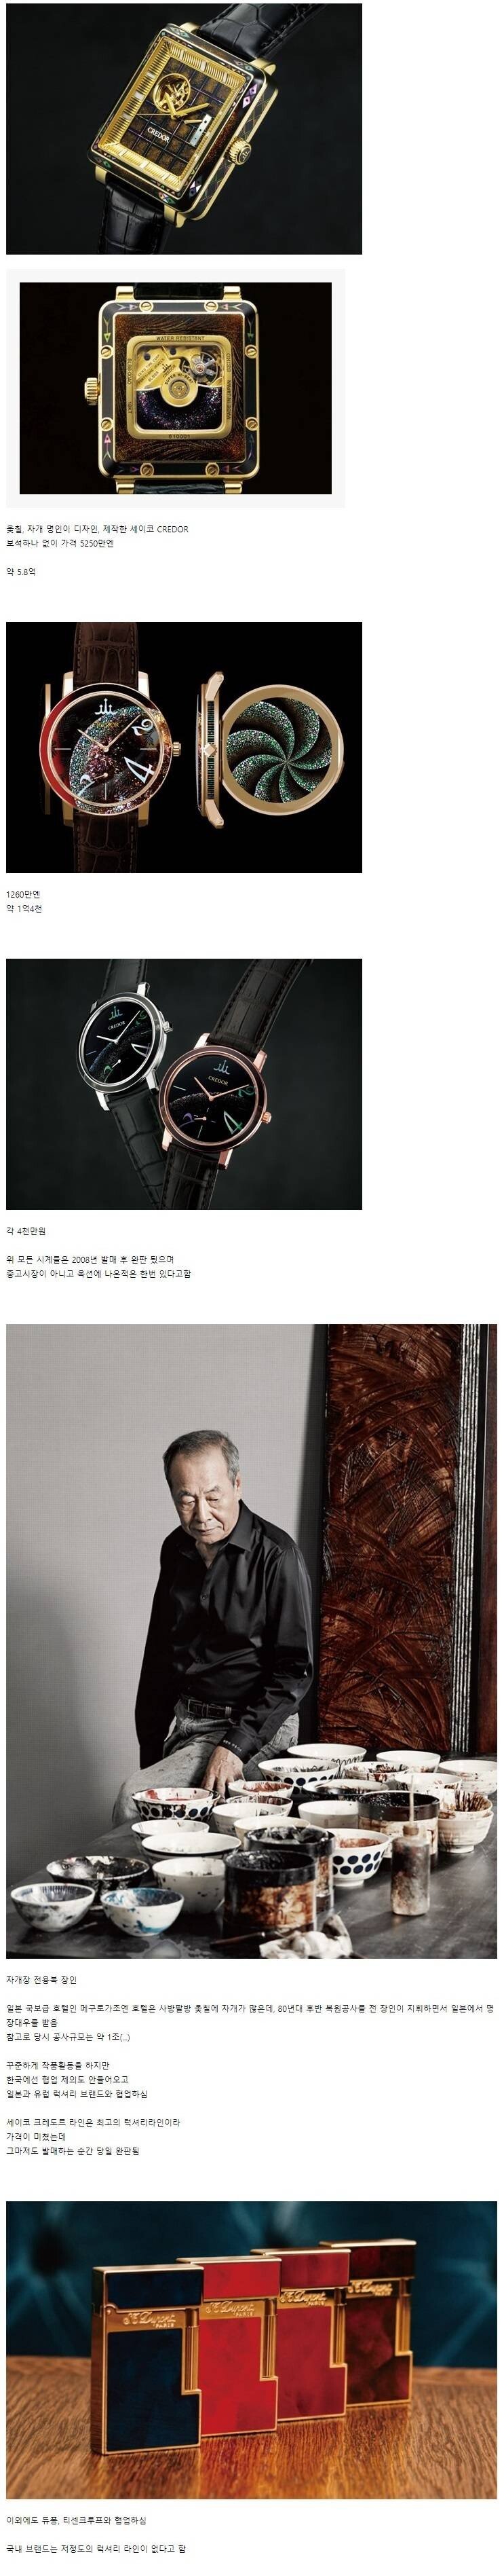 한국인이 만드는 5억짜리 시계.jpg